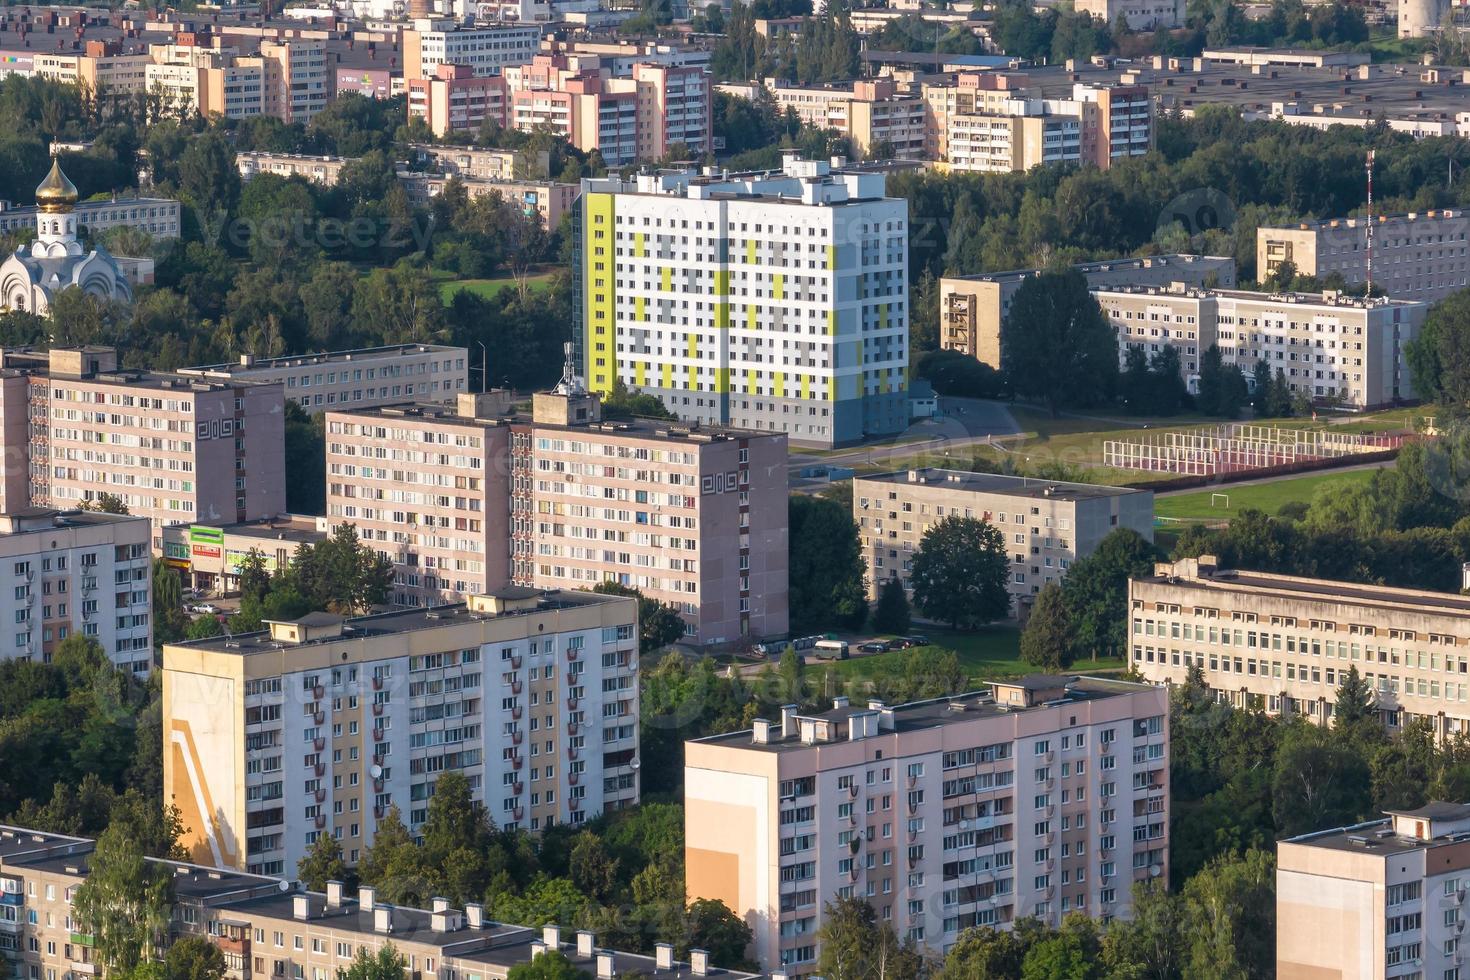 vue panoramique aérienne du quartier résidentiel des immeubles de grande hauteur photo